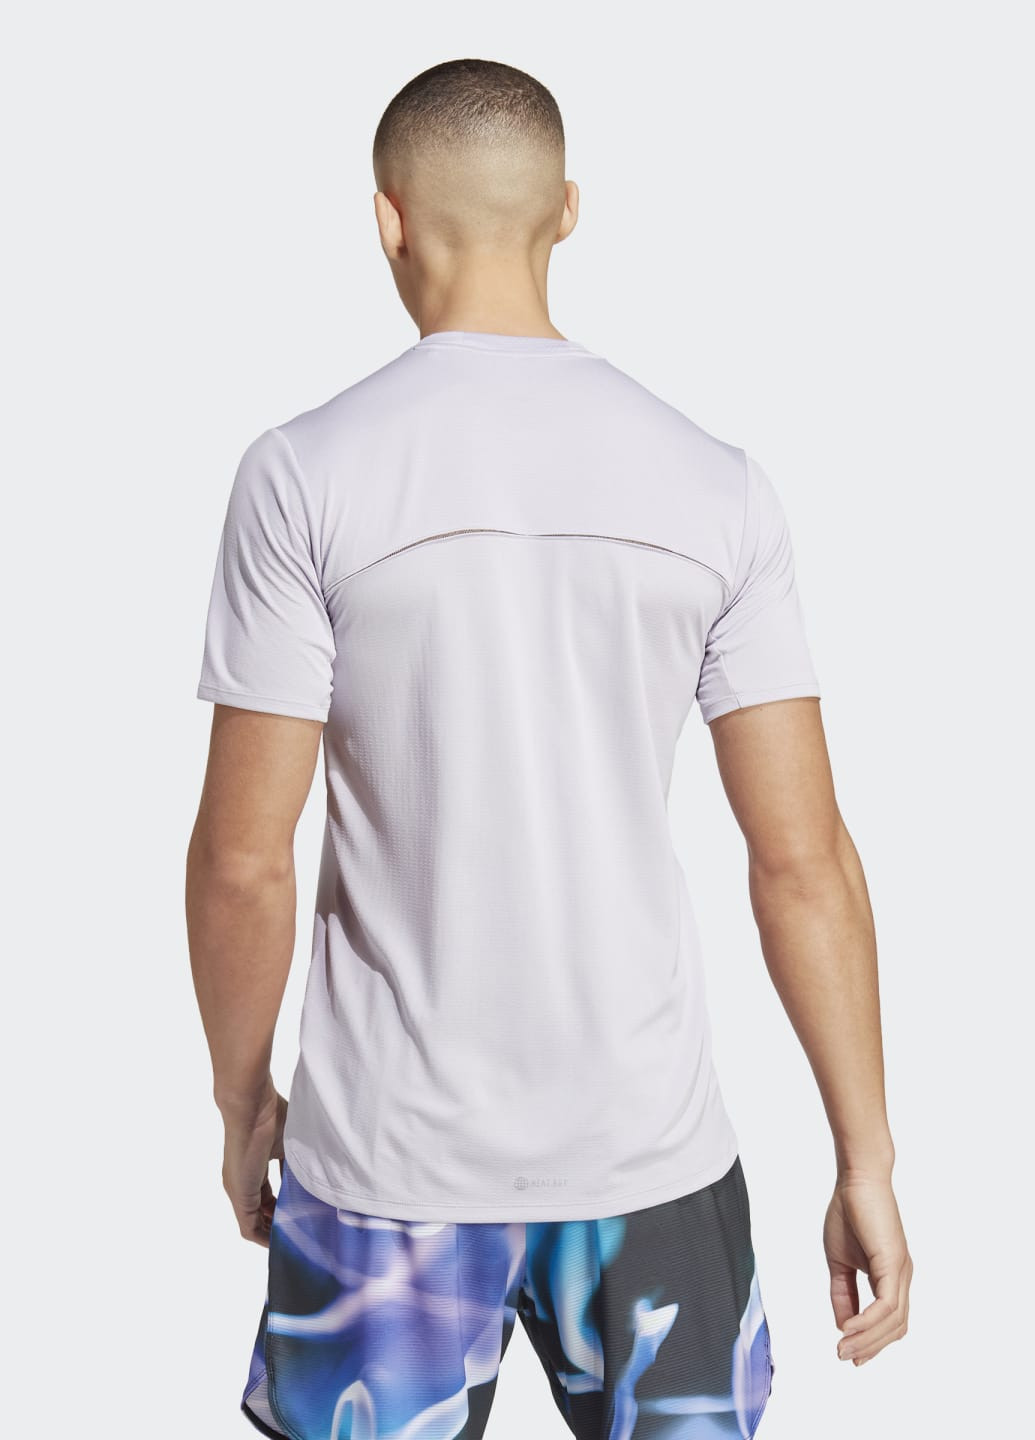 Фиолетовая тренировочная футболка designed 4 training heat.rdy hiit adidas